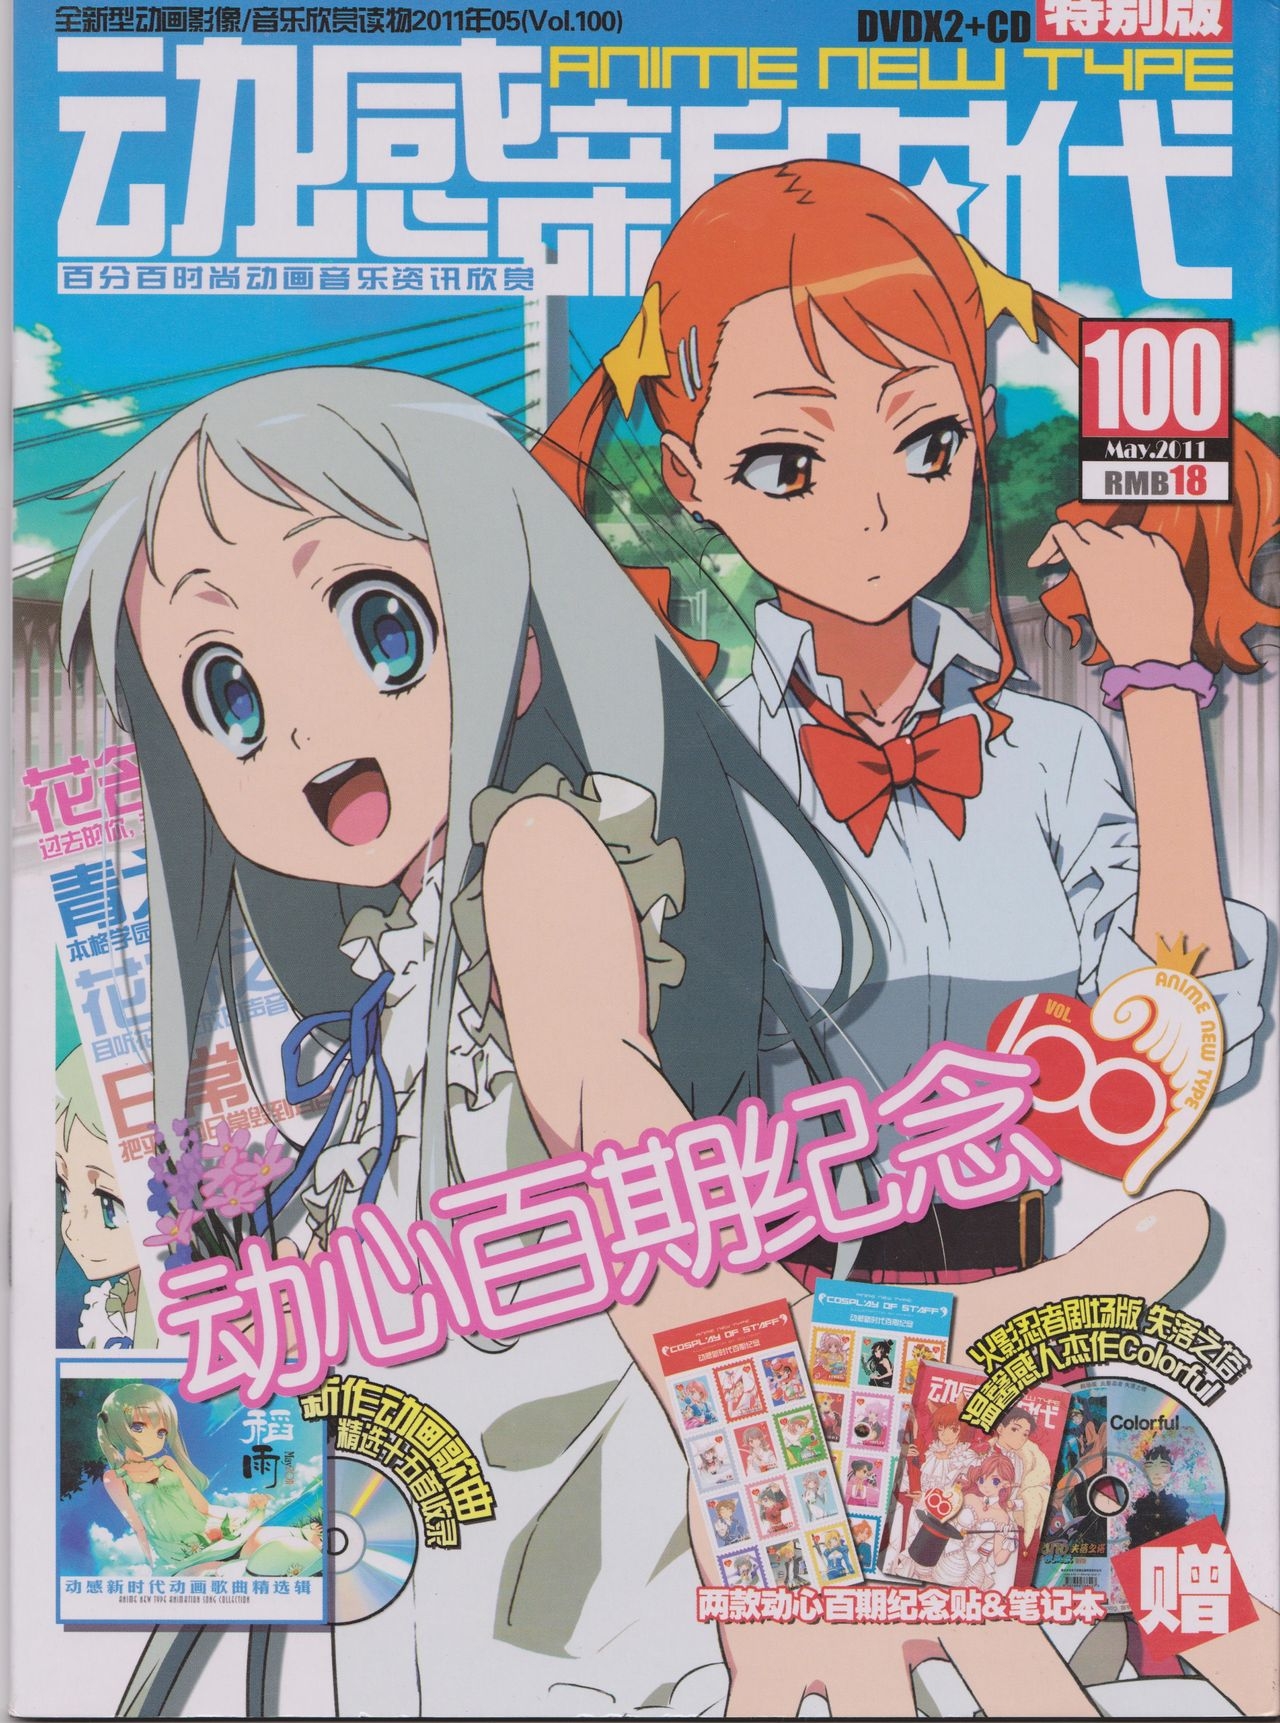 Anime New Type Vol.100 0